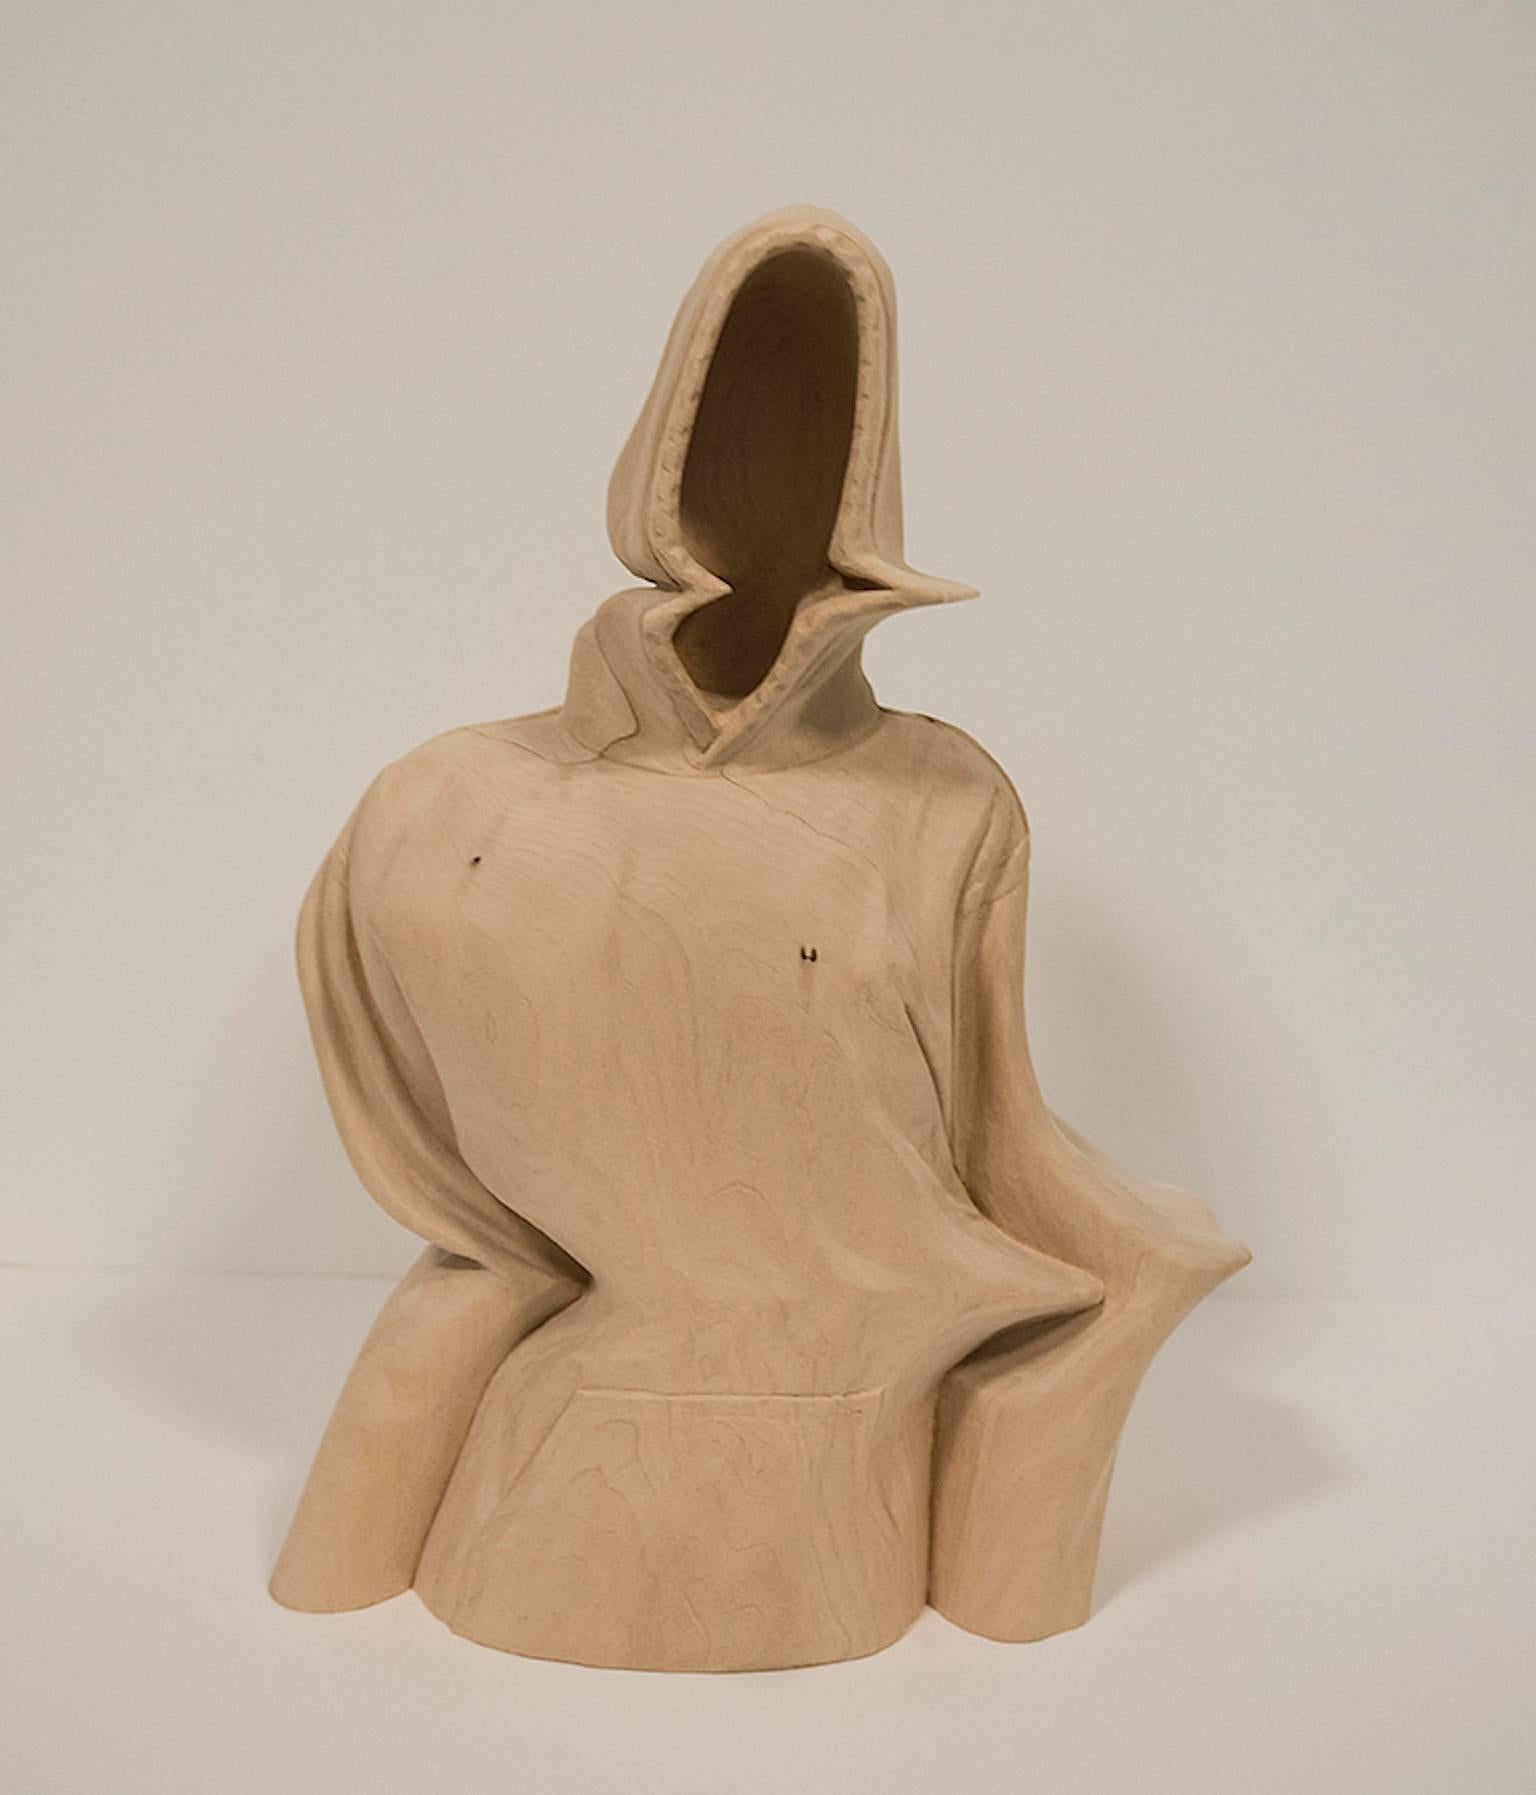 Figurative Sculpture Paul Kaptein - "Mute" sculpture en bois sculptée à la main, contemporain, figuratif, surréalisme.